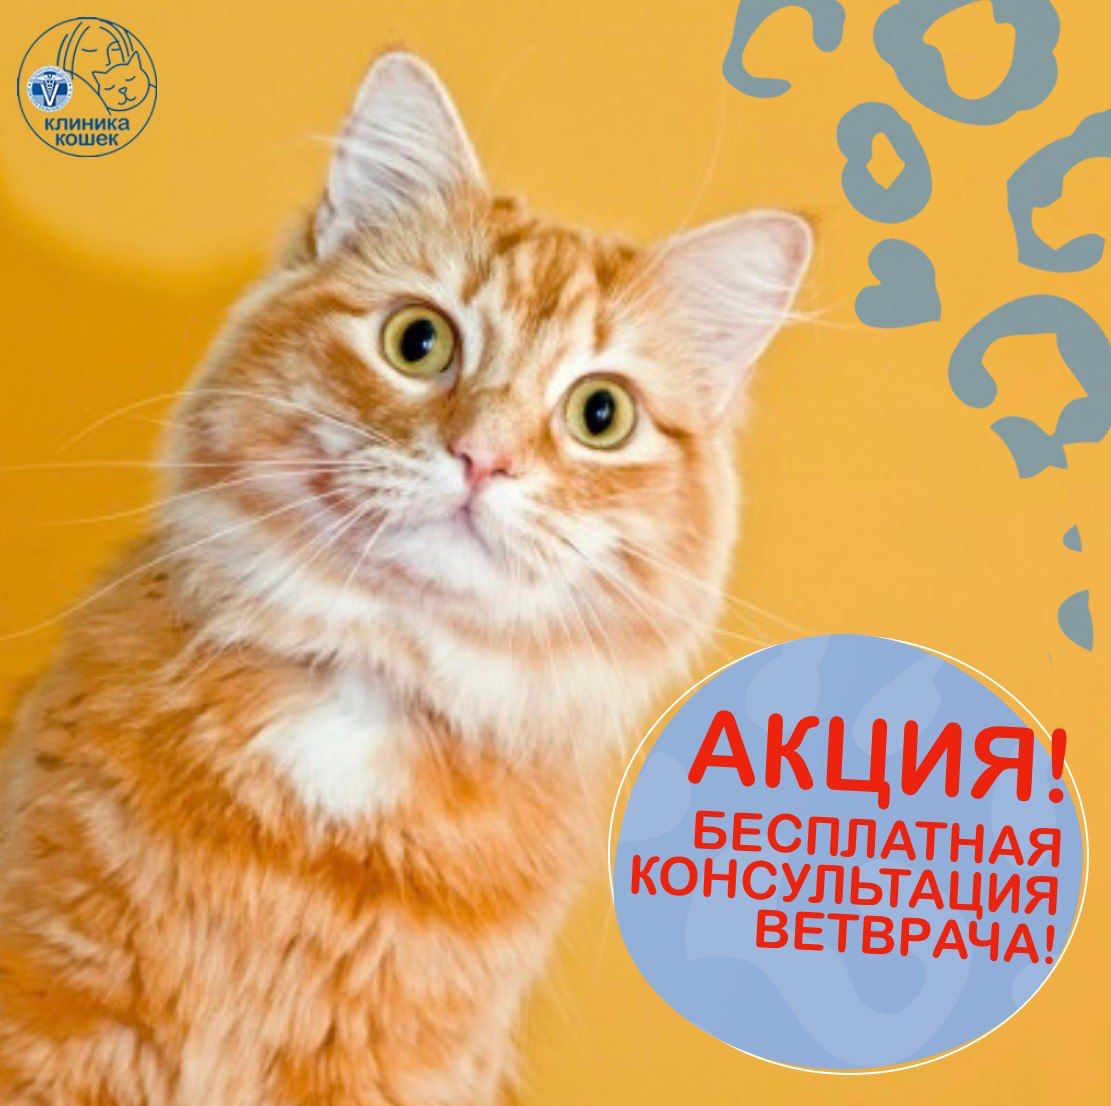 Только до конца августа! Бесплатная консультация в клинике кошек!